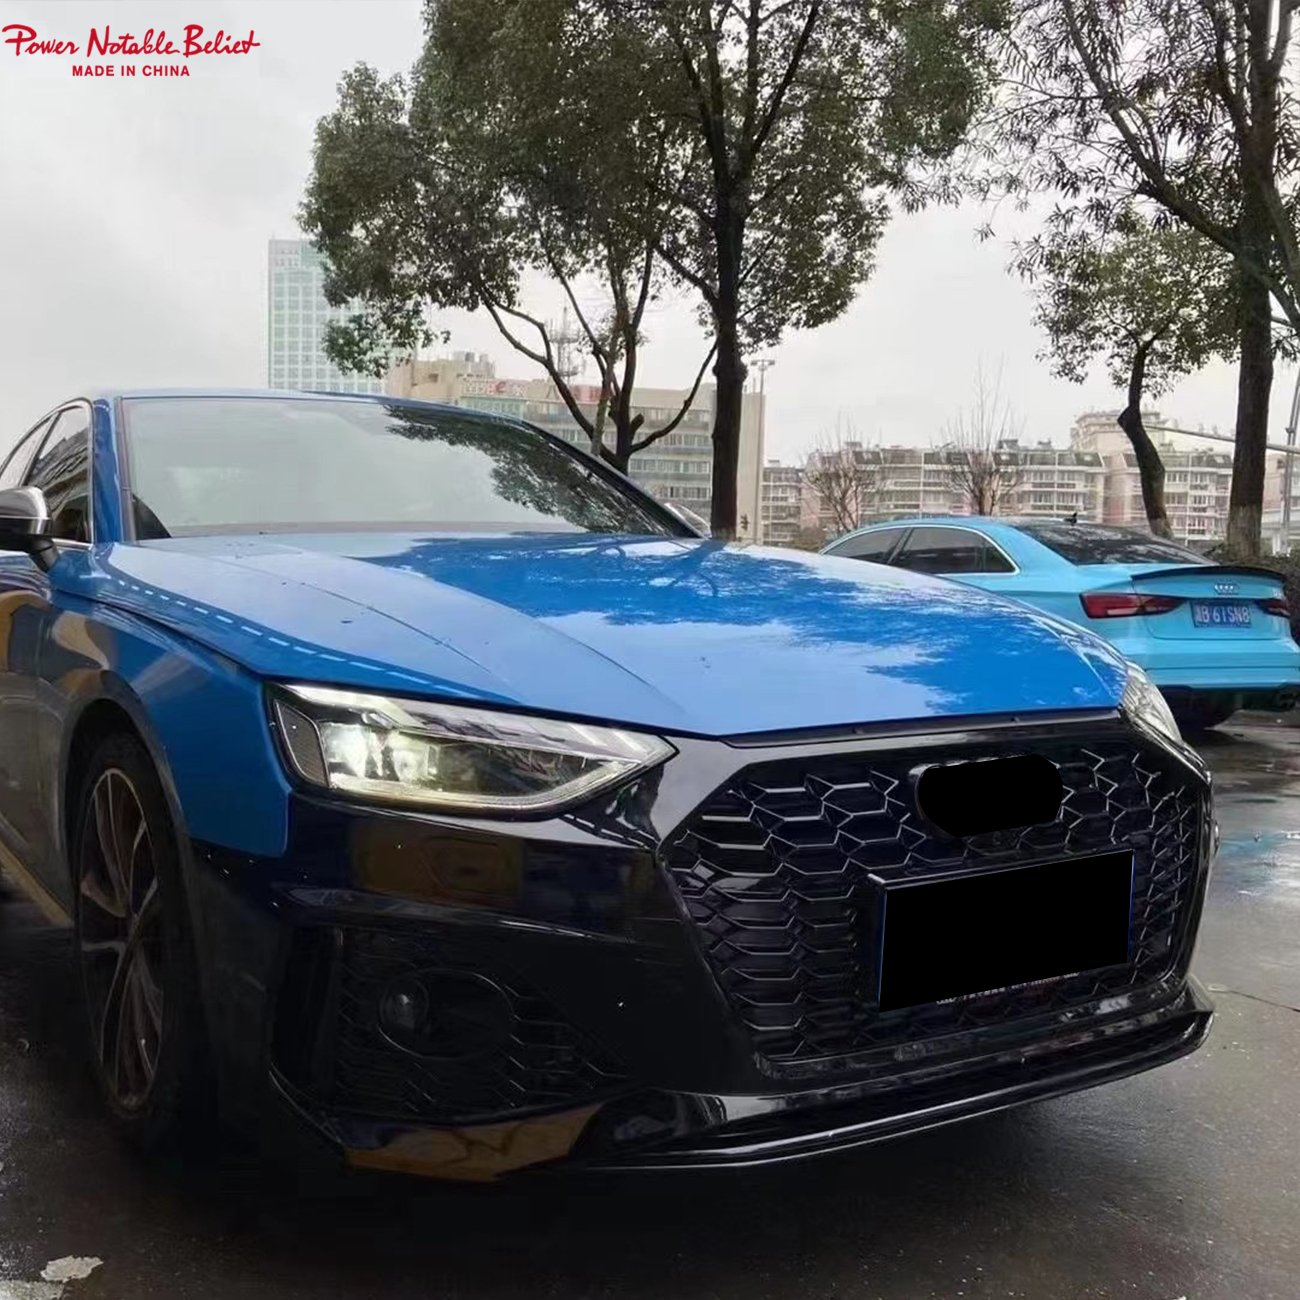 Audi හි නවතම RS4 මාදිලිය සඳහා වූ සුවිශේෂී ශරීර කට්ටලය අනාවරණය විය